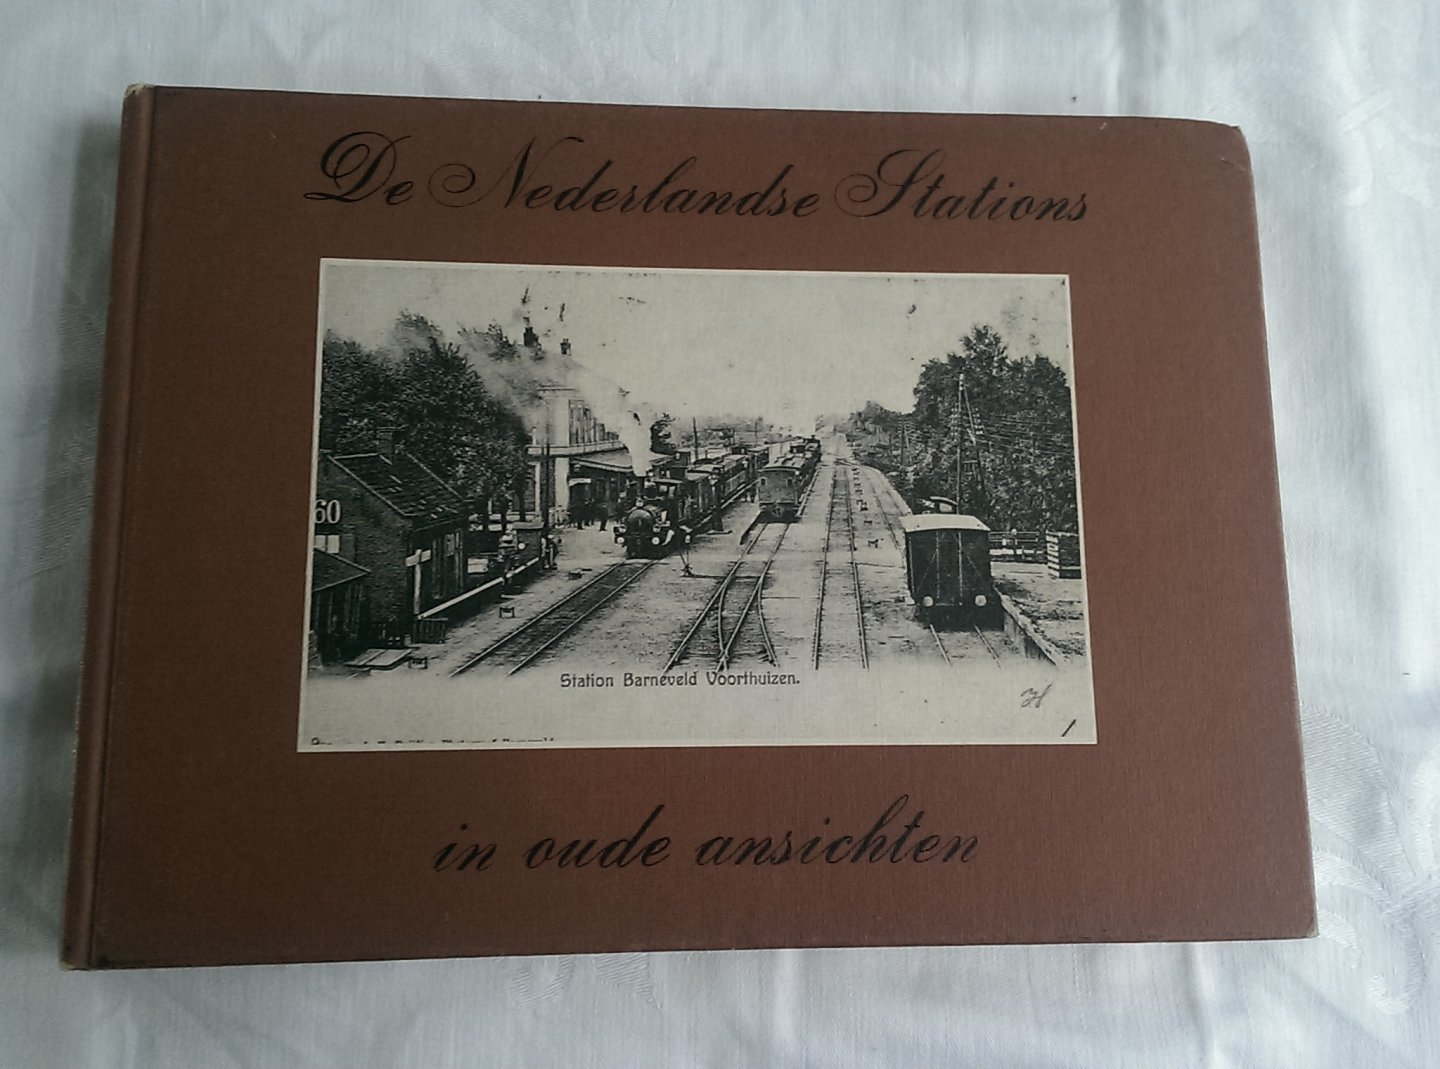  - De Nederlandse stations in oude ansichten